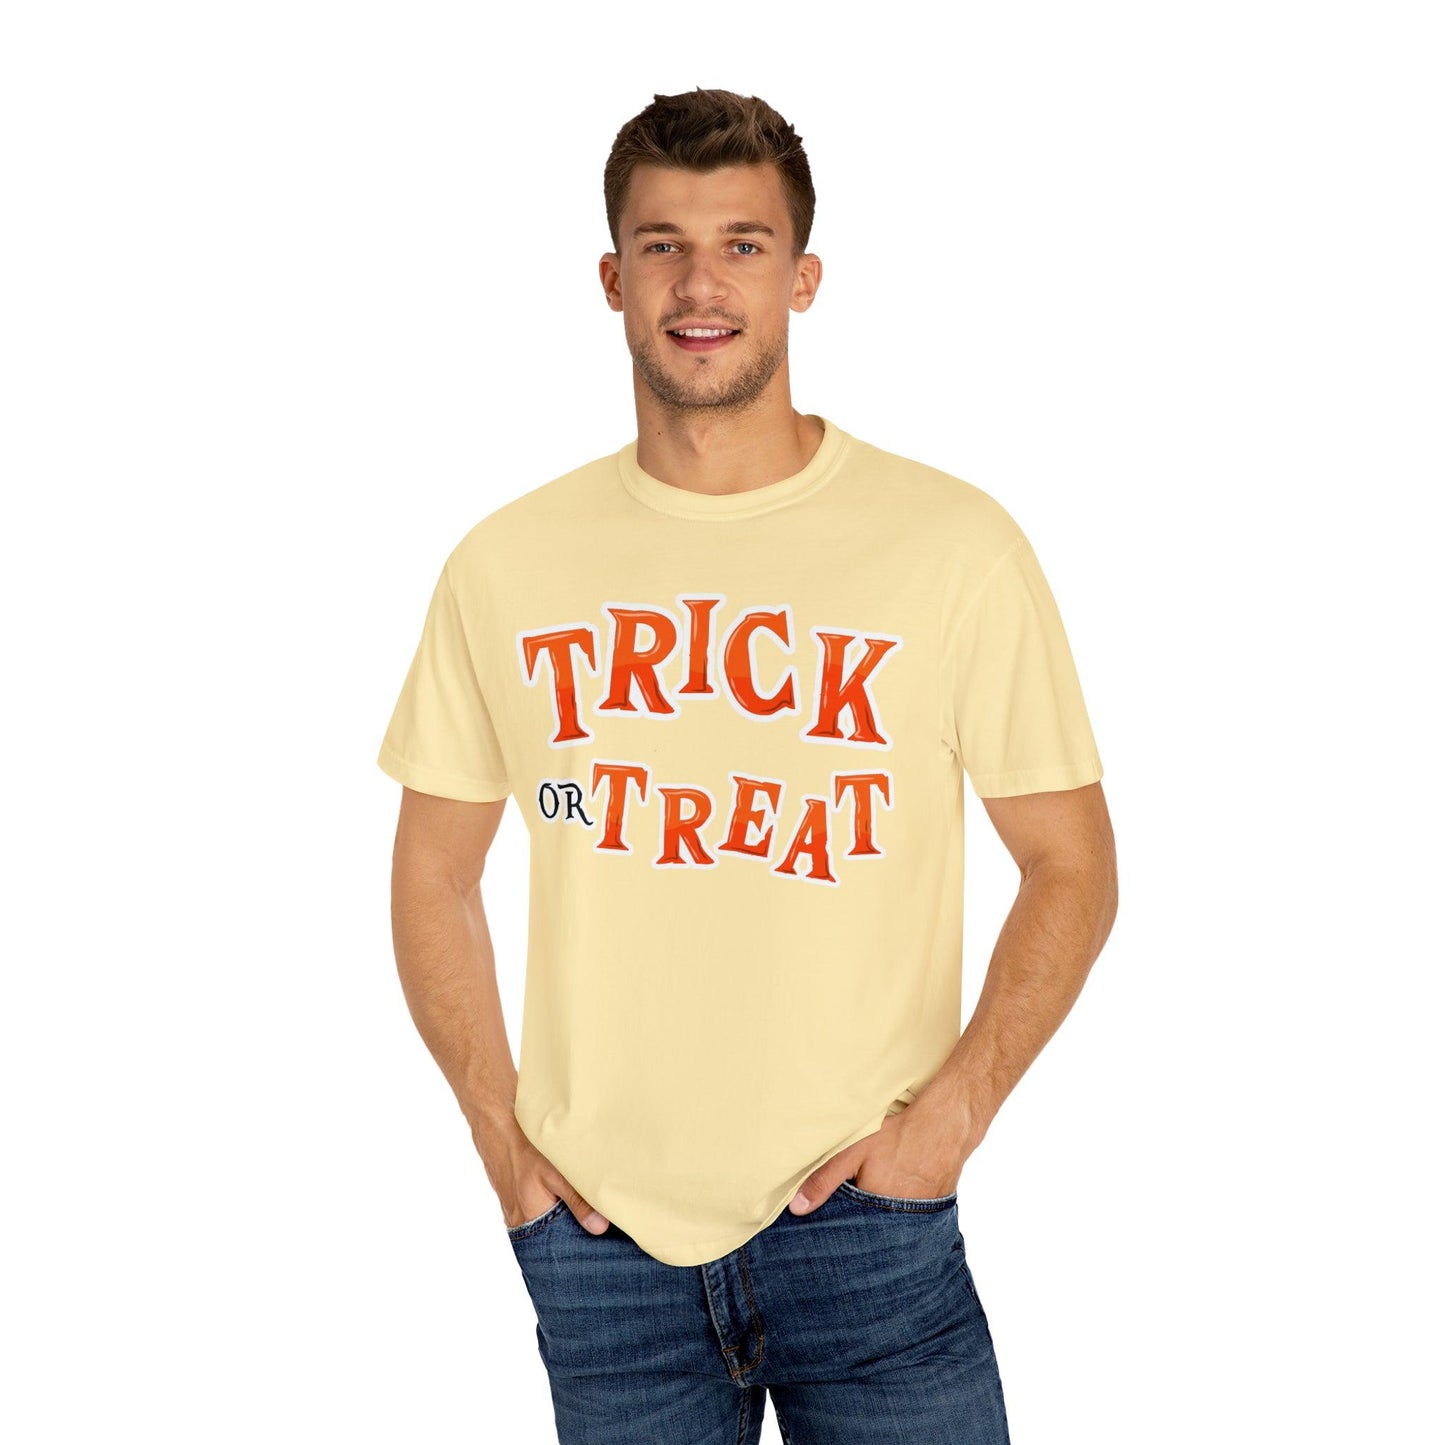 Retro Halloween Tshirt, Trick or Treat Shirt Halloween Costume Vintage Shirt Halloween Shirt Cute Spooky Shirt, Halloween Gift Halloween T-shirt